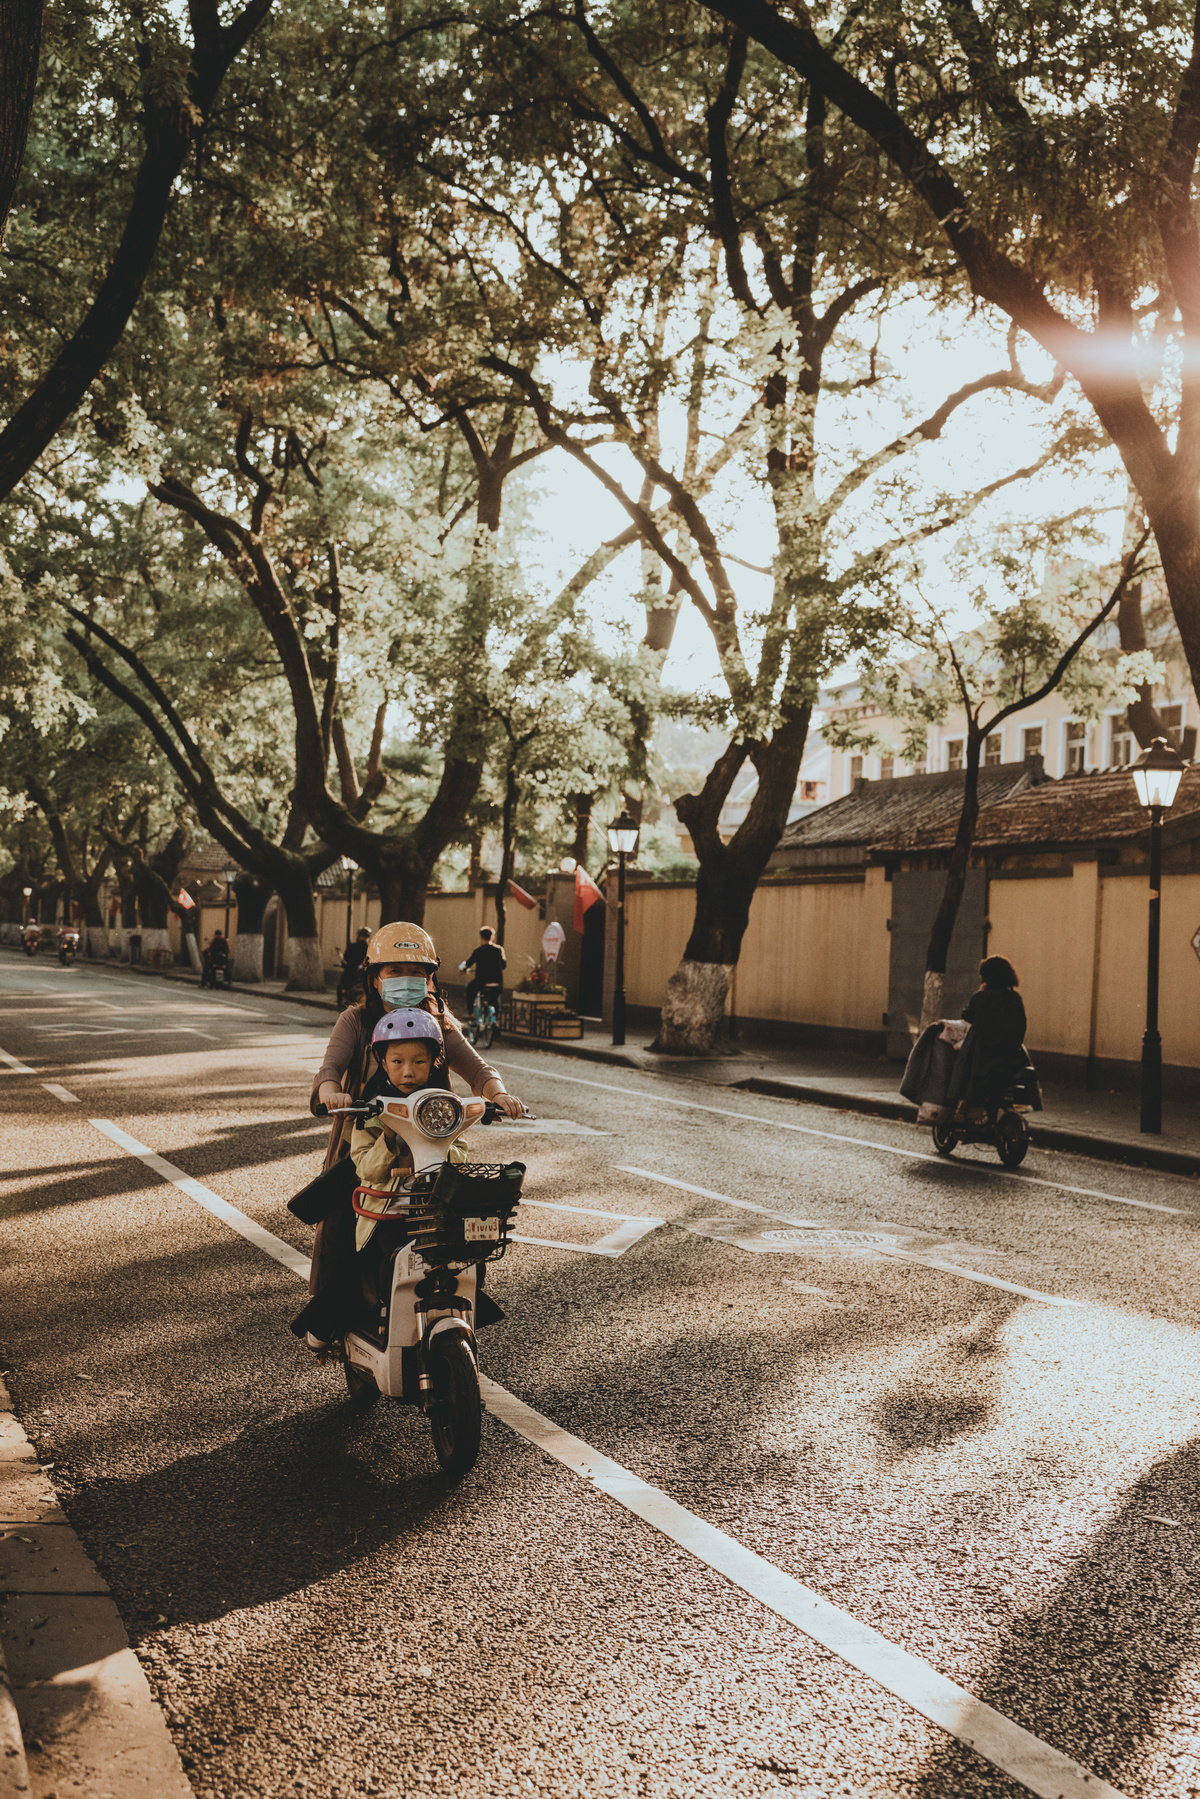 一个人在街上骑着摩托车 人们在路上开车